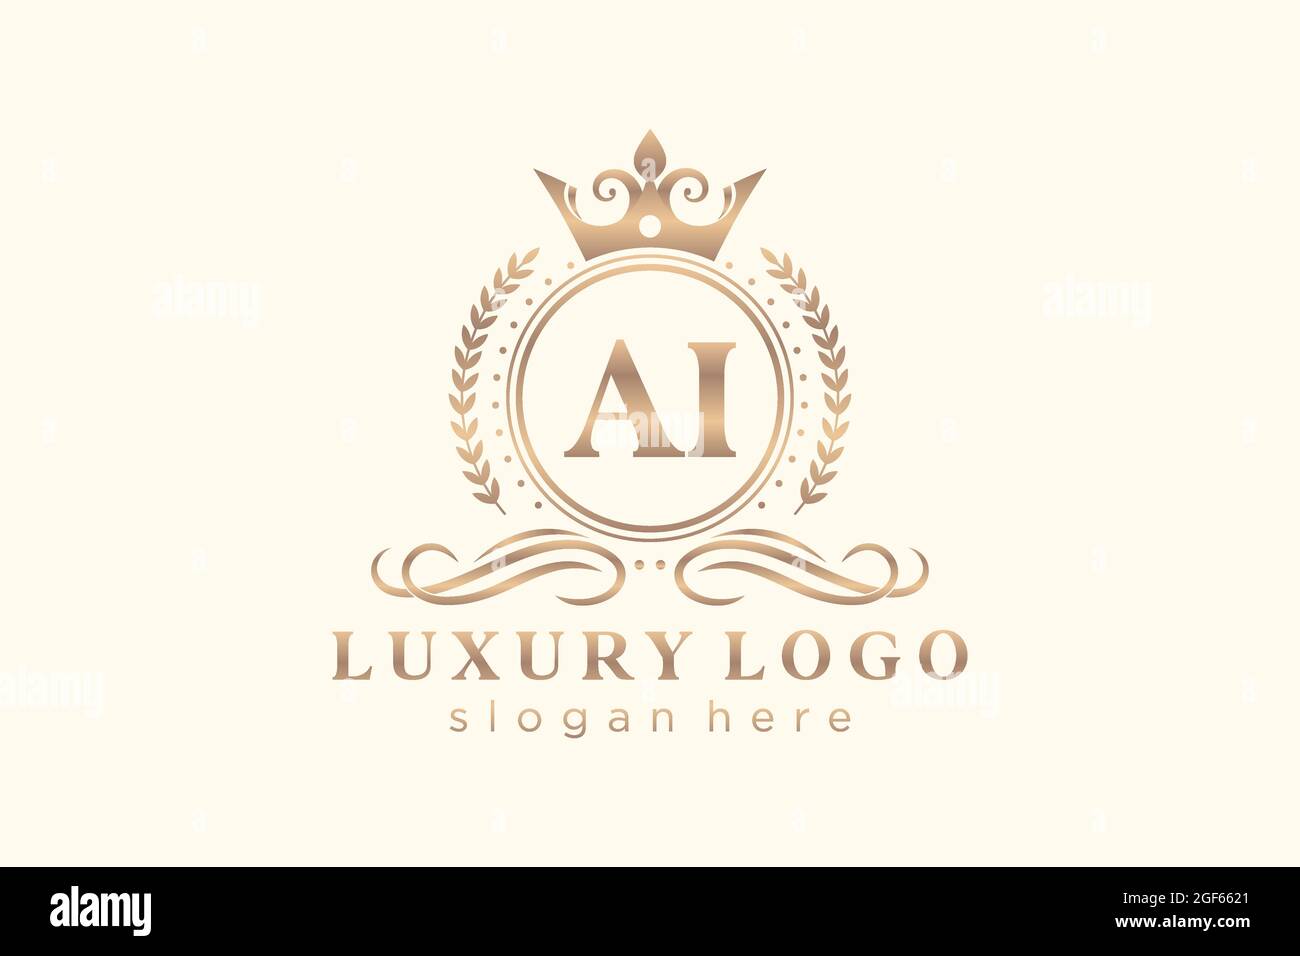 AI Letter Royal Luxury Logo Vorlage in Vektorgrafik für Restaurant, Royalty, Boutique, Cafe, Hotel, Heraldisch, Schmuck, Mode und andere Vektor illustrr Stock Vektor